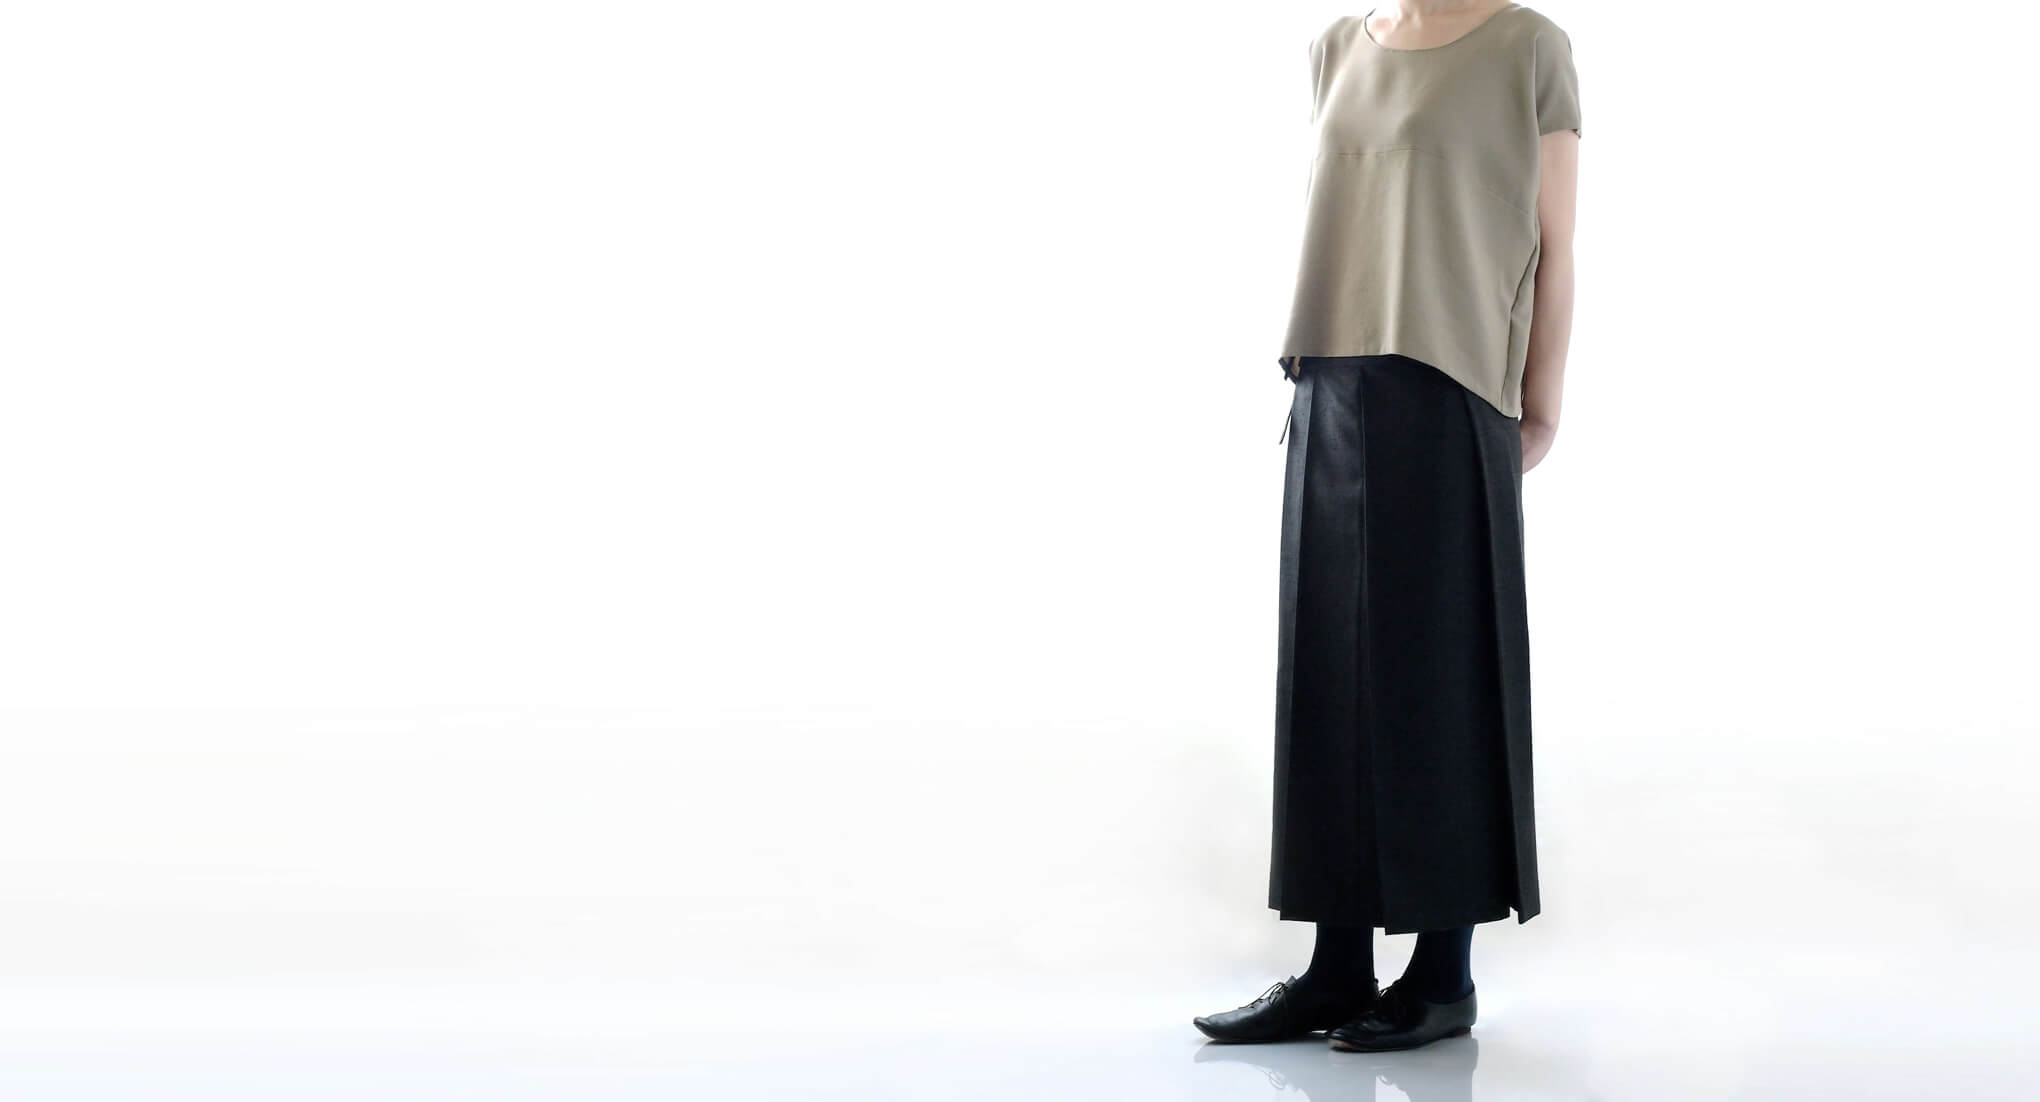 袴を思わせるデザインのプリーツスカート。